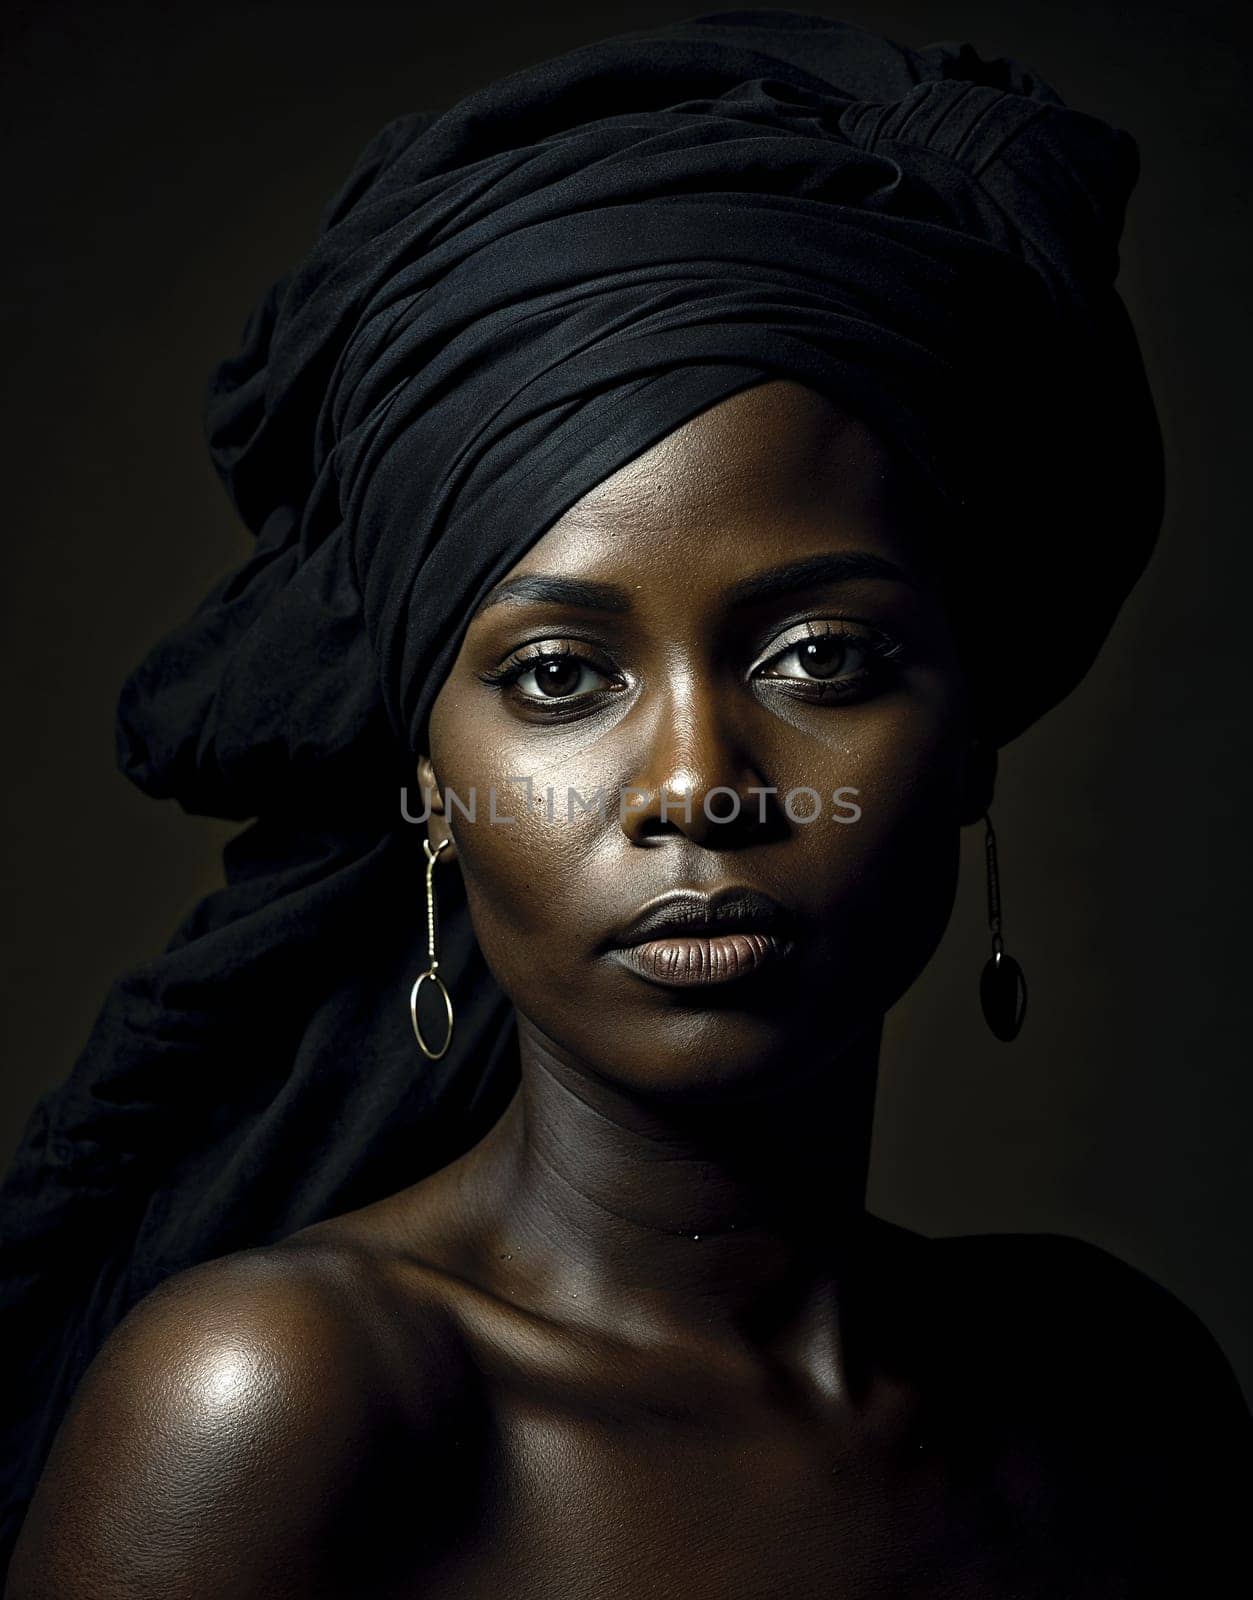 African woman Woman in Black Dress With Turban Headwear by chrisroll